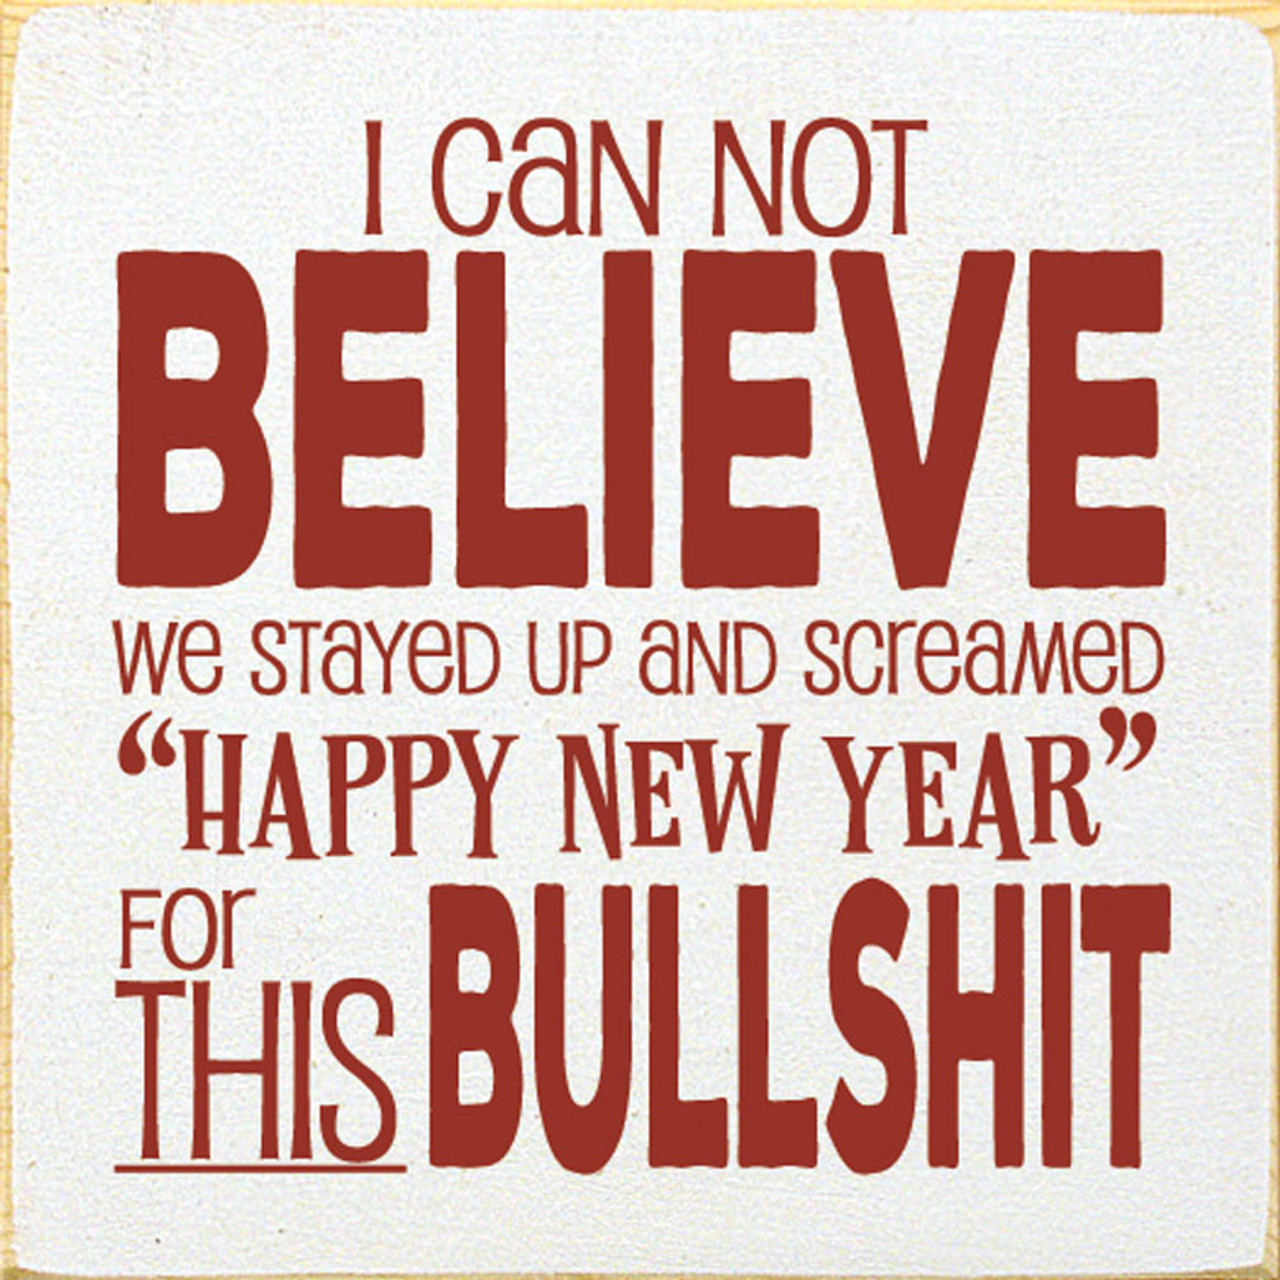 new year bullshit quotes